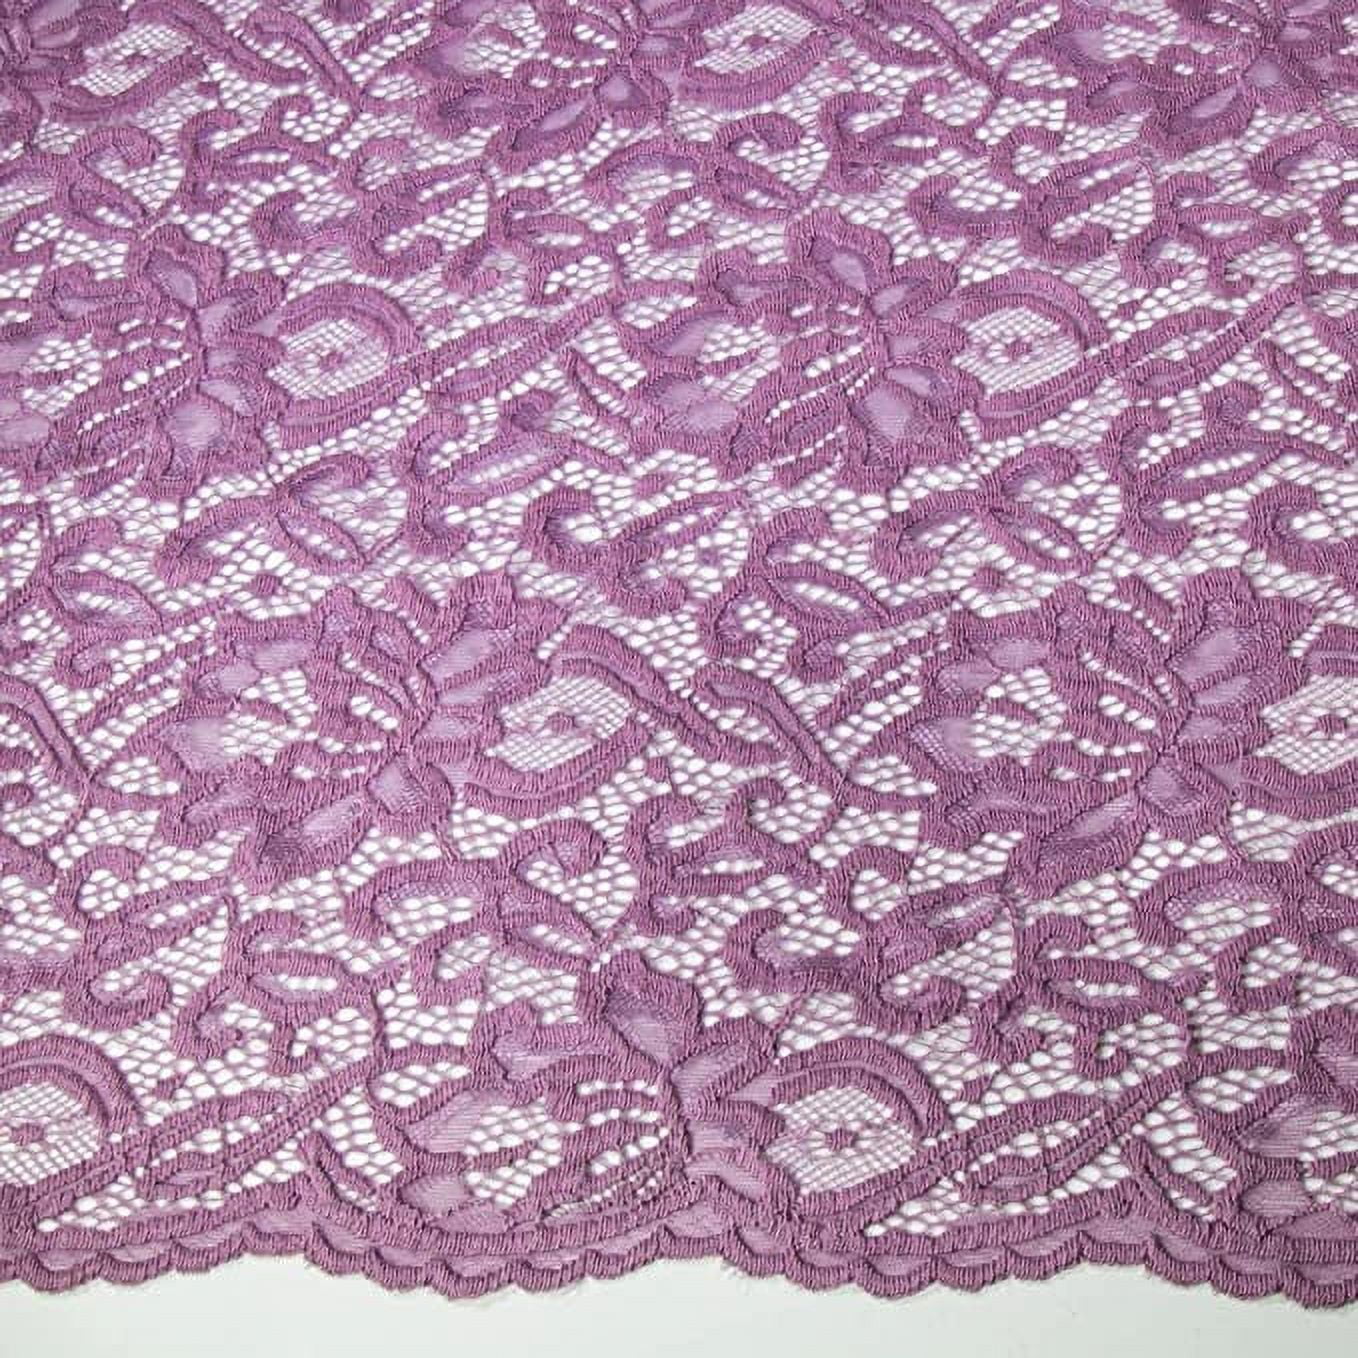 FabricLA Scallop Pattern Lace Fabrics - Nylon Spandex - Stretch Lace Fabric  by The Yard - Mauve 